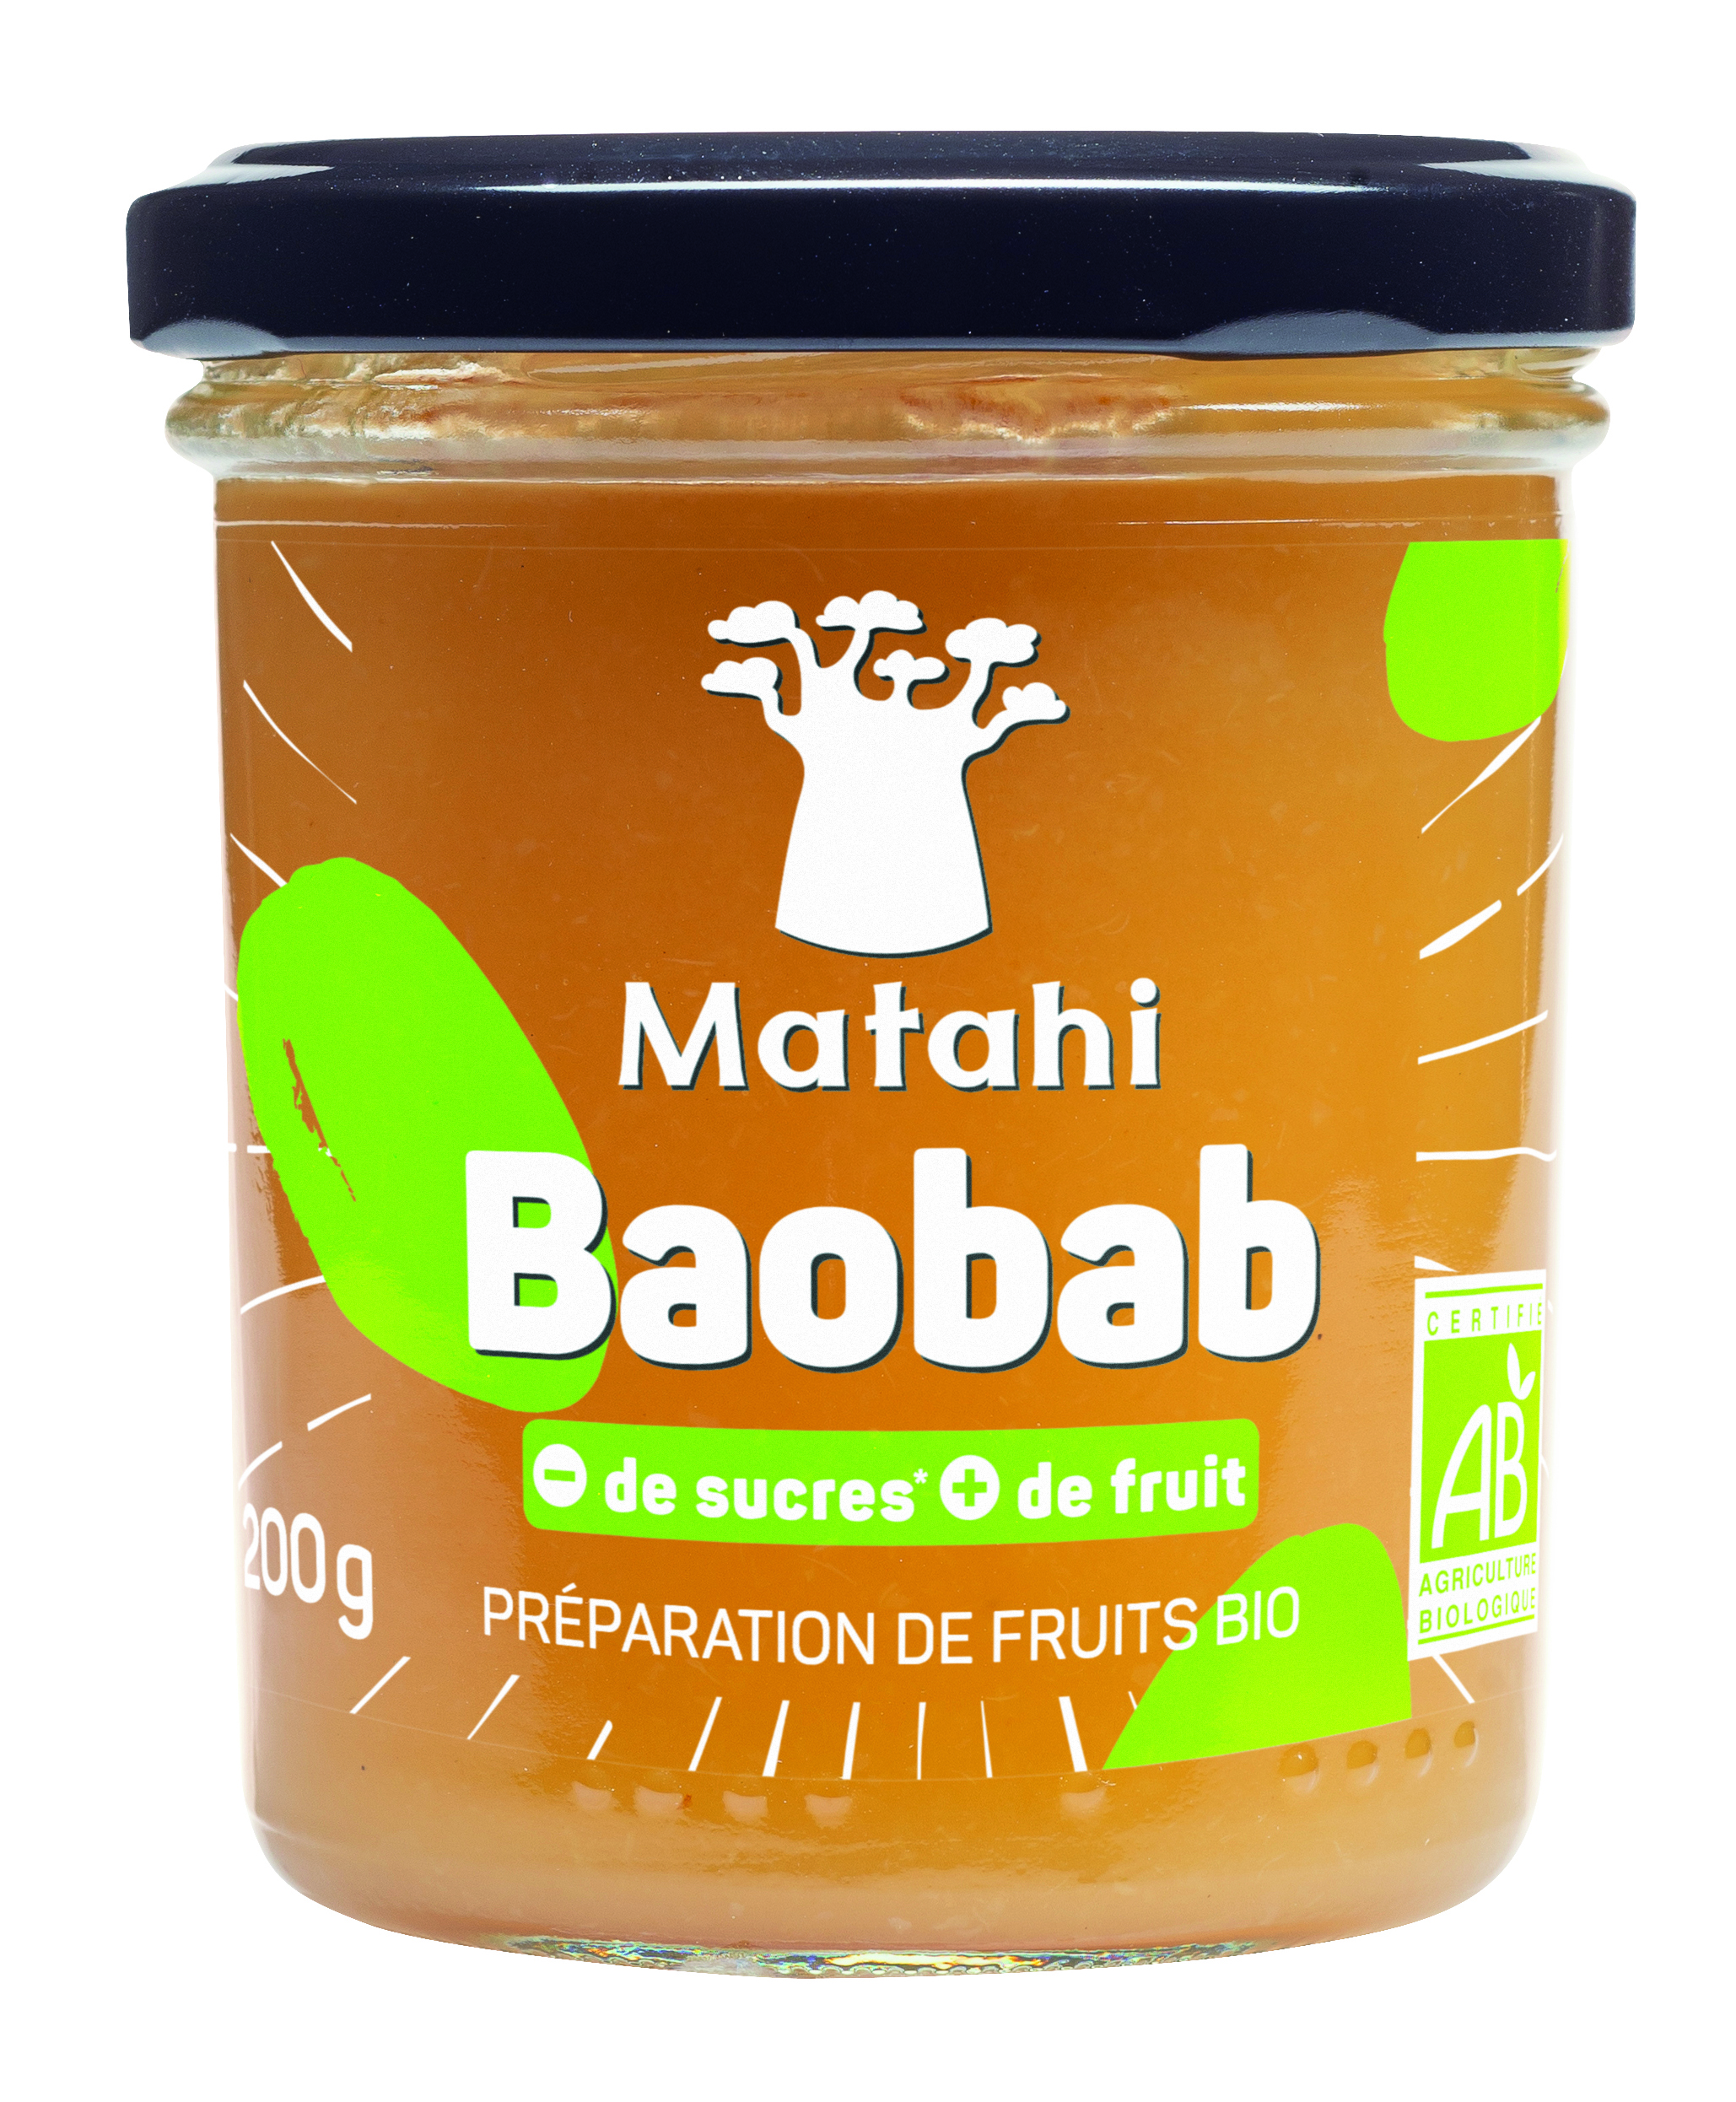 Organic Baobab Fruit Preparation (12 X 200 G) - Matahi